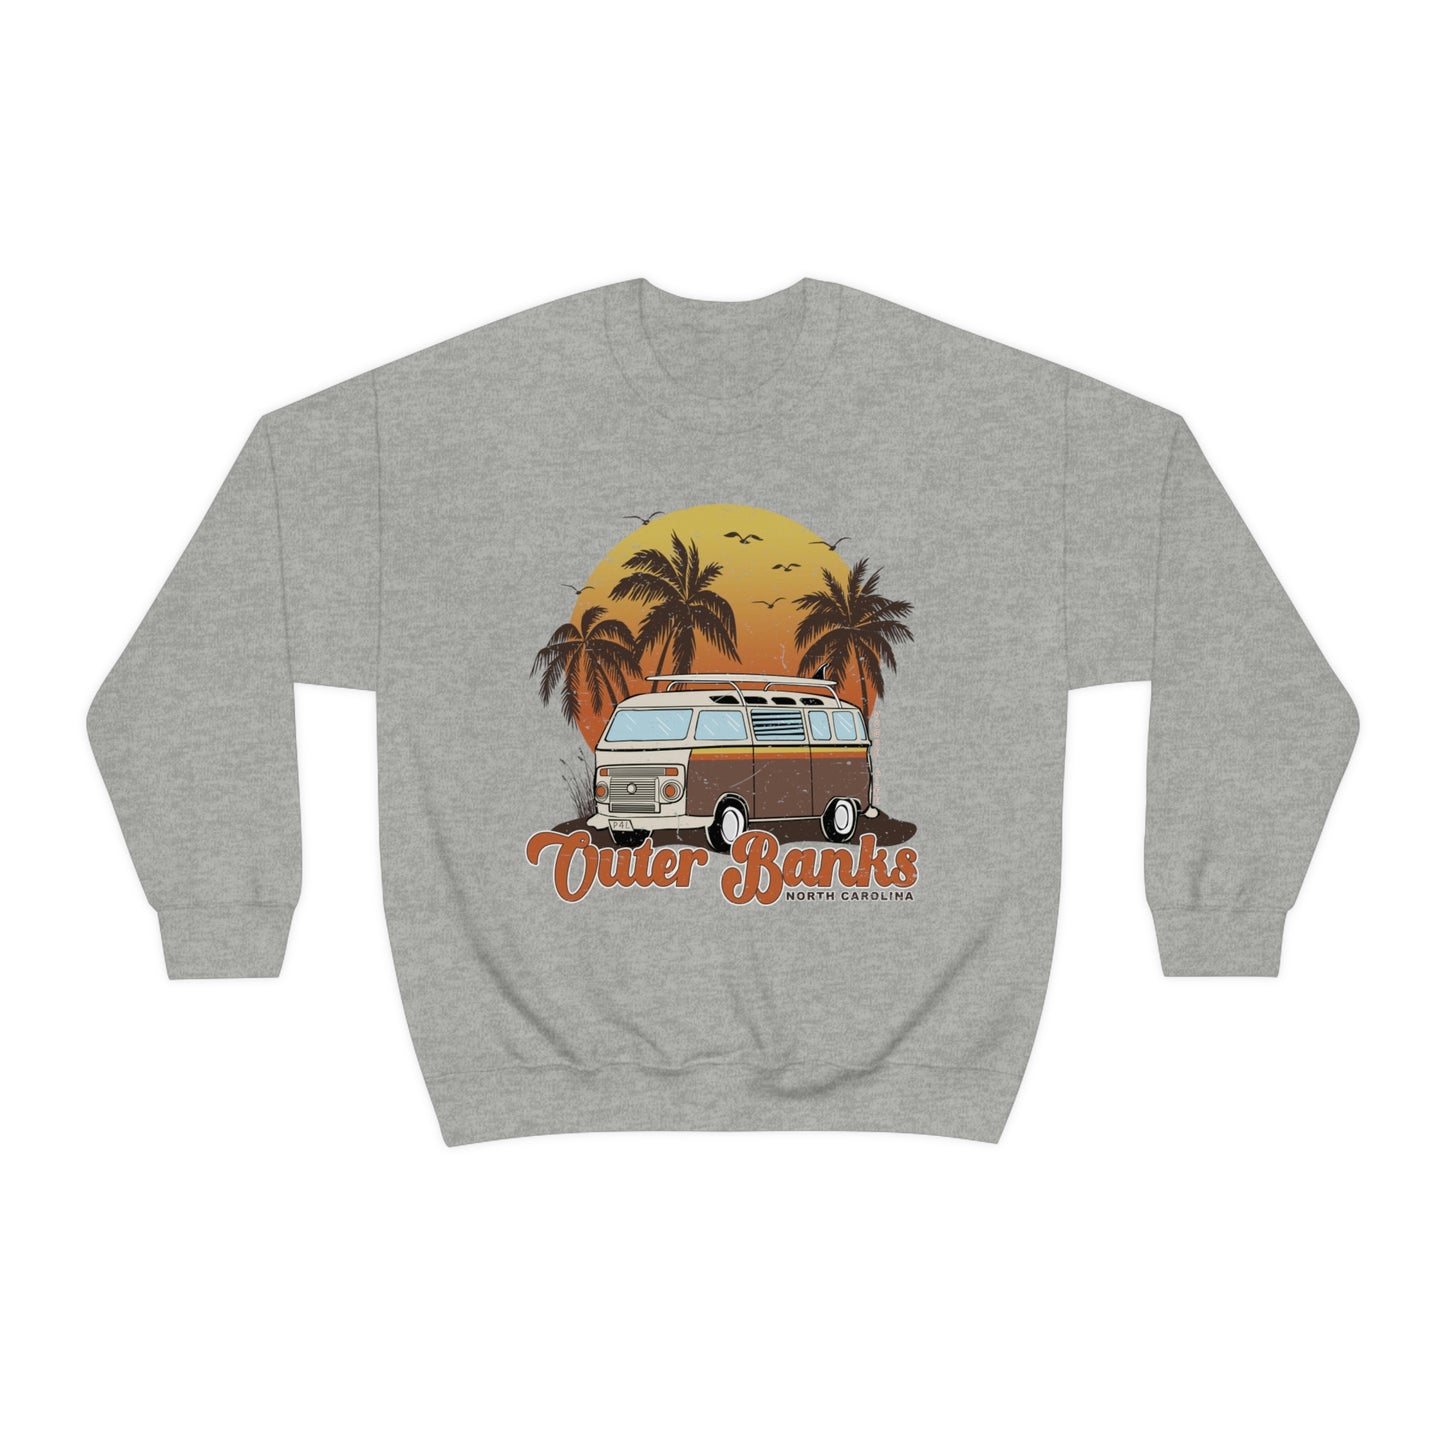 Outer Banks North Carolina Sweatshirt